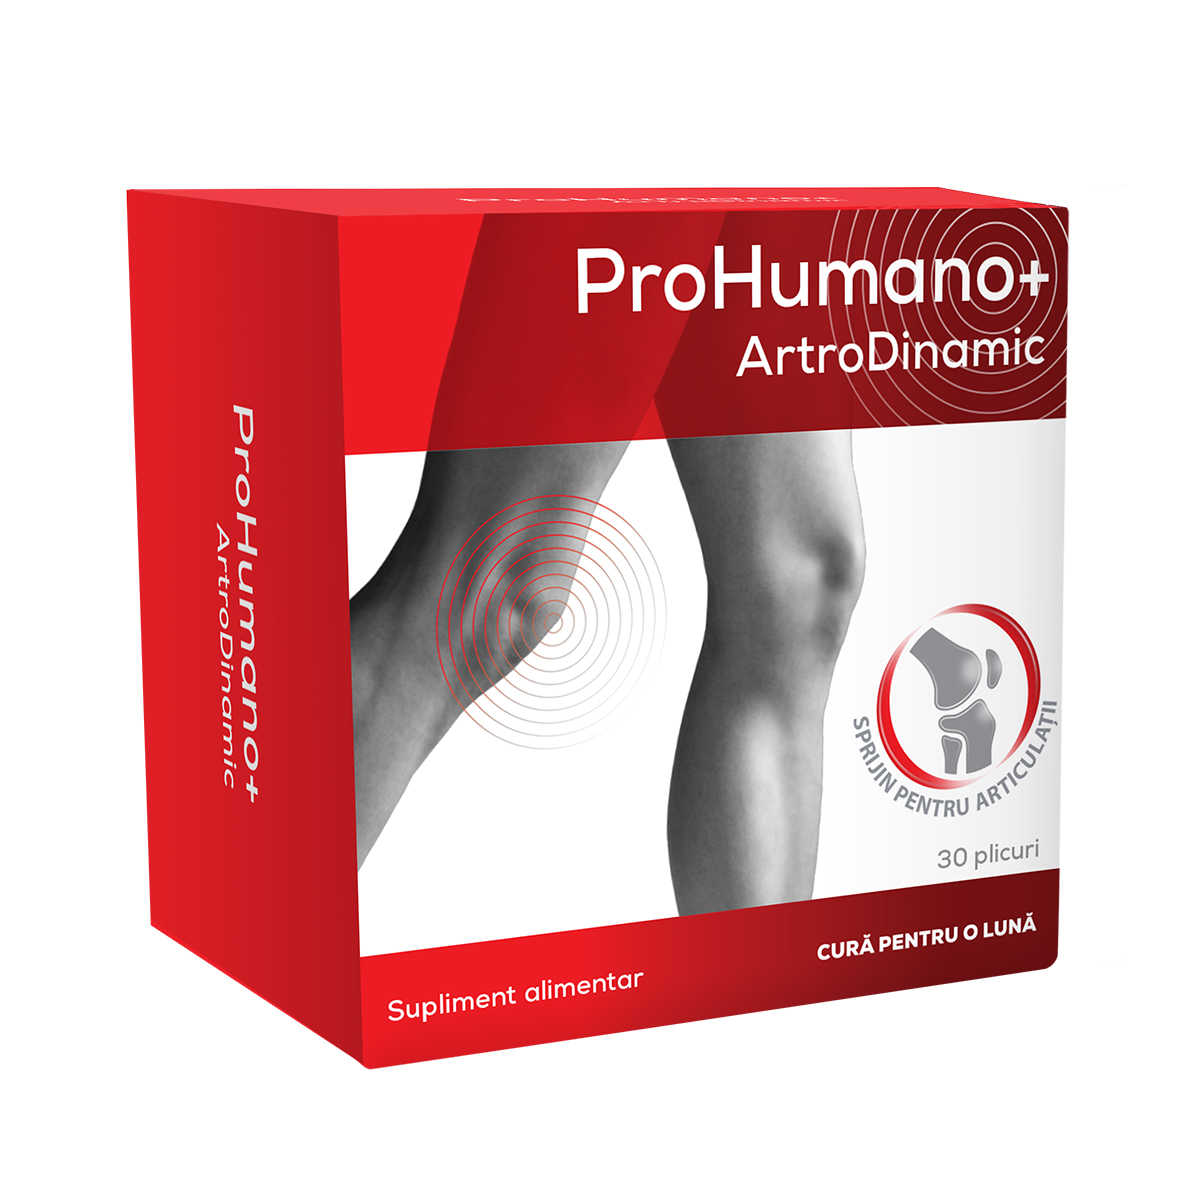 prohumano artrodinamic prospect gonartroza care deformează artroza genunchiului